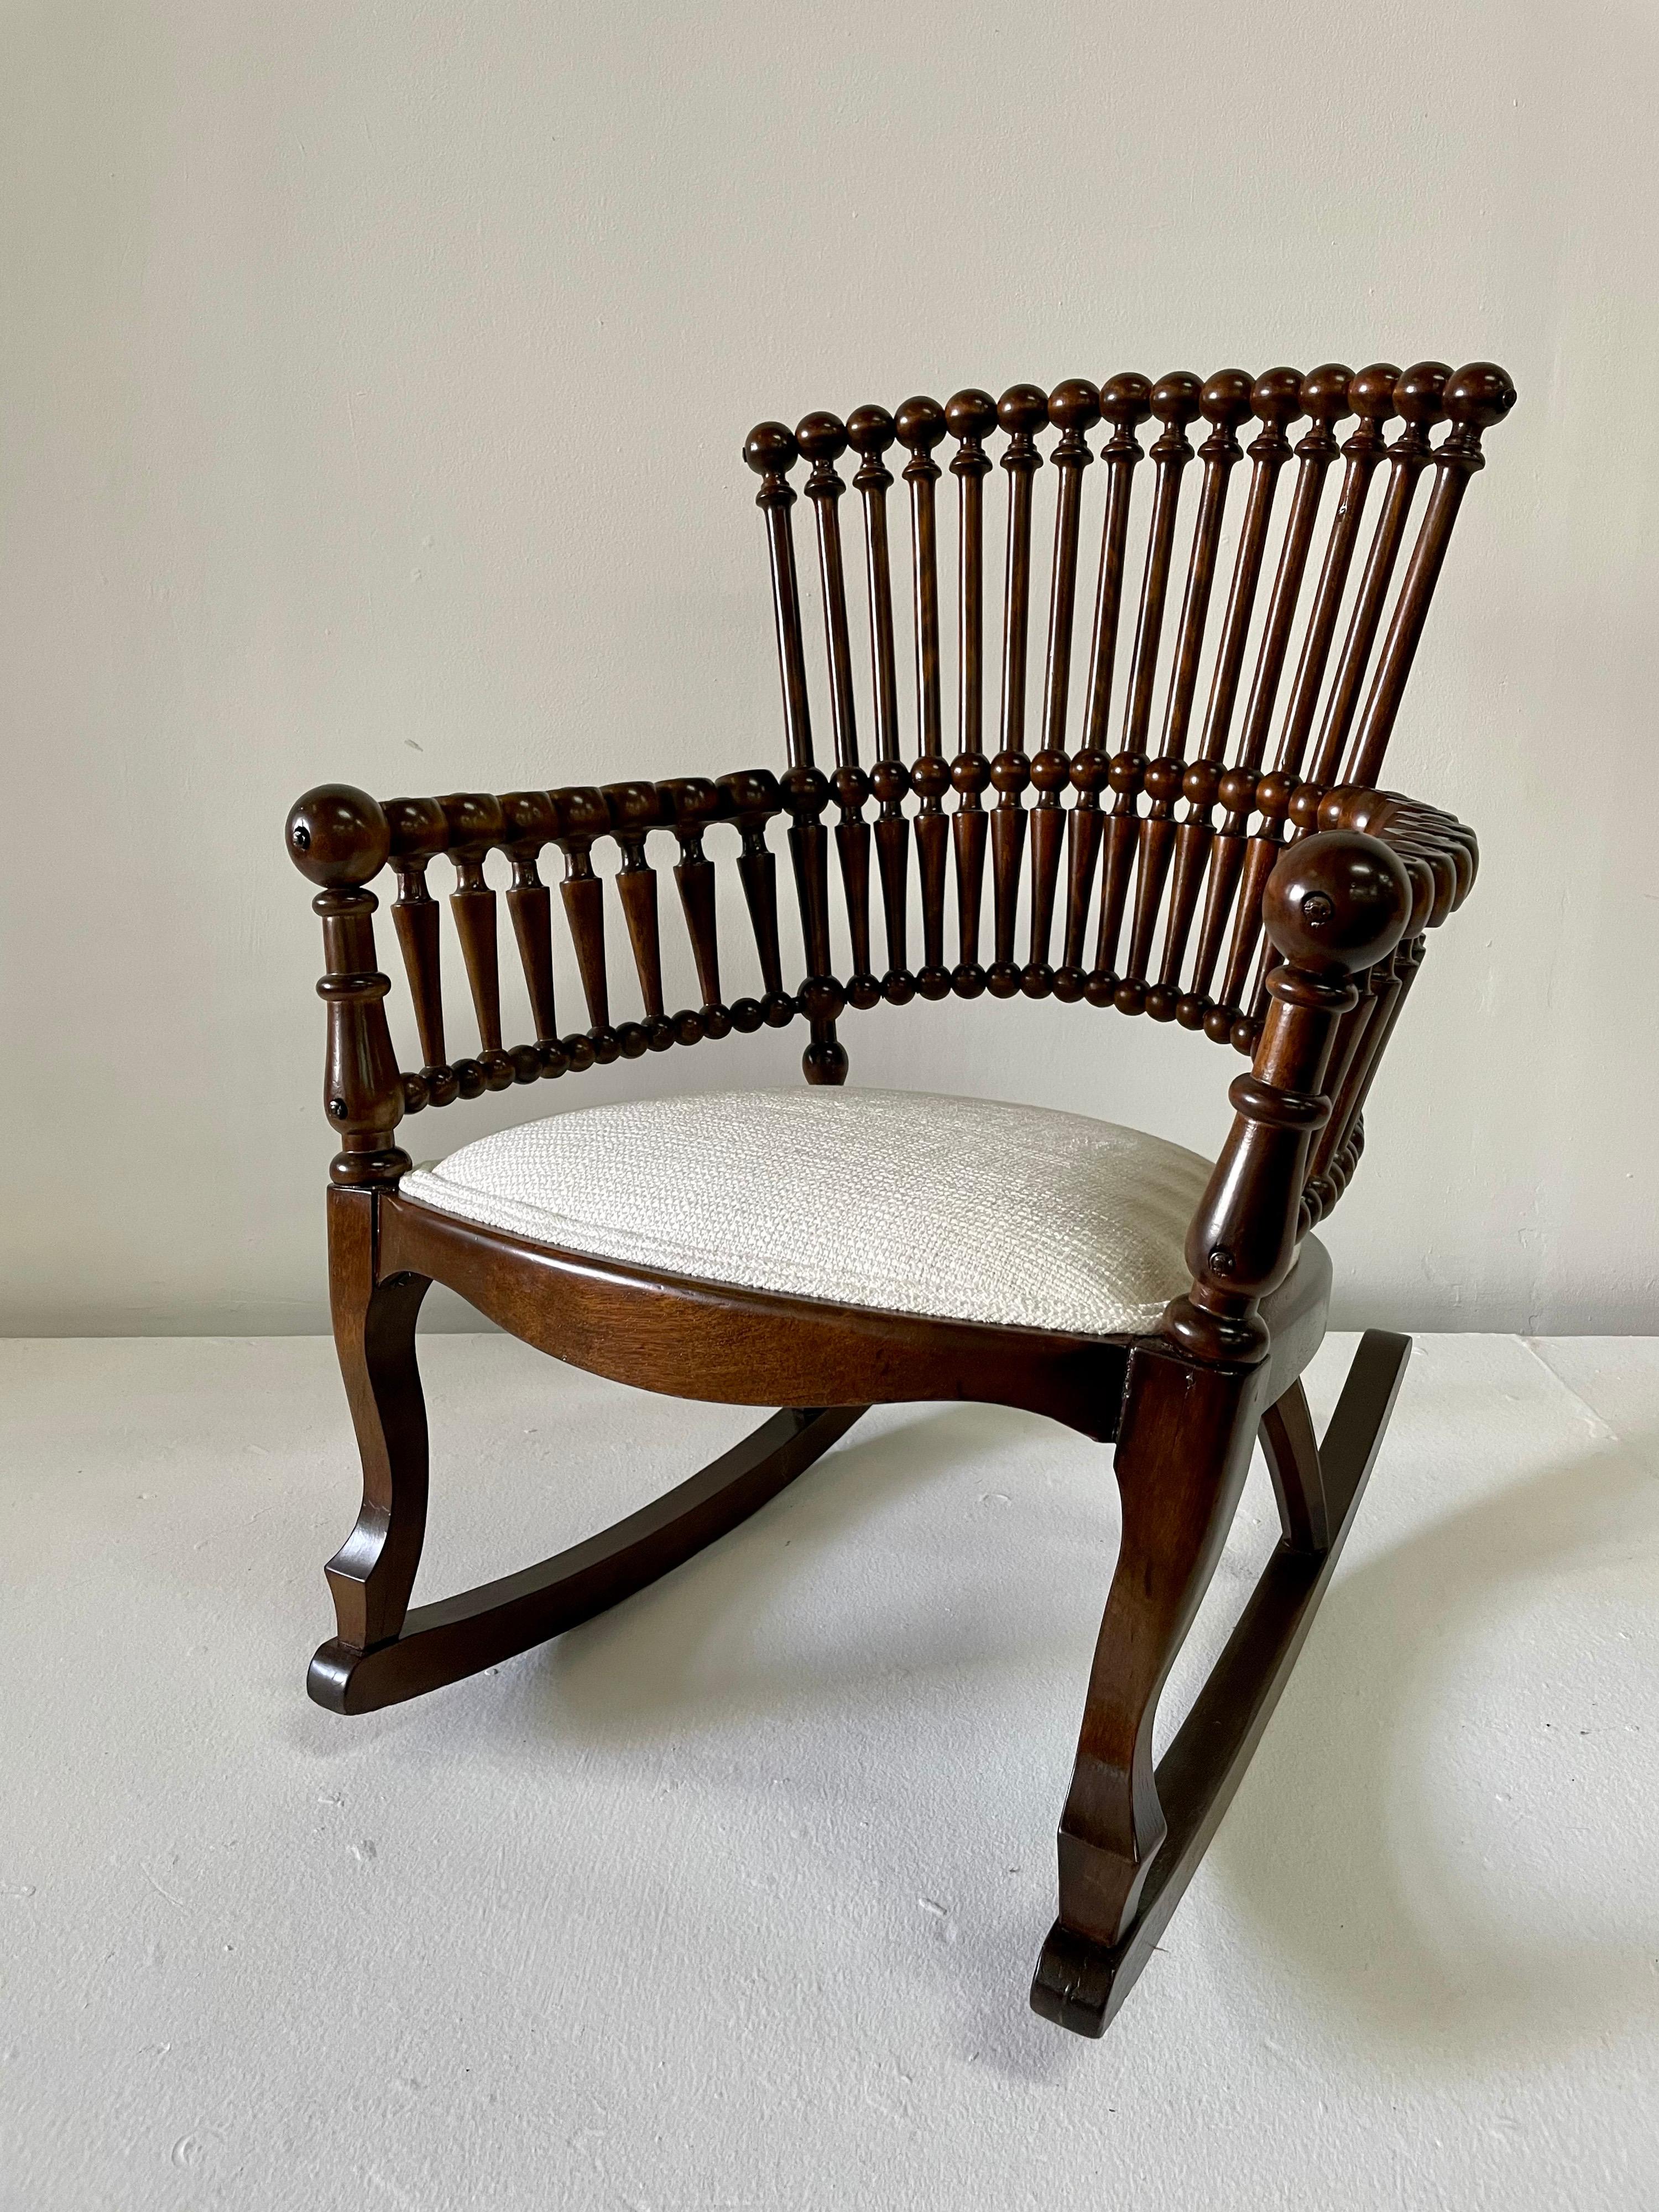 Dies ist einer der schönsten Stühle, die wir je angeboten haben. Spindeldesign und Gestell aus jahrhundertealtem poliertem Holz, Sitz aus neuem Bouclé-Stoff. Bereit, Ihr Zuhause zu schmücken! Ein echtes Statement.